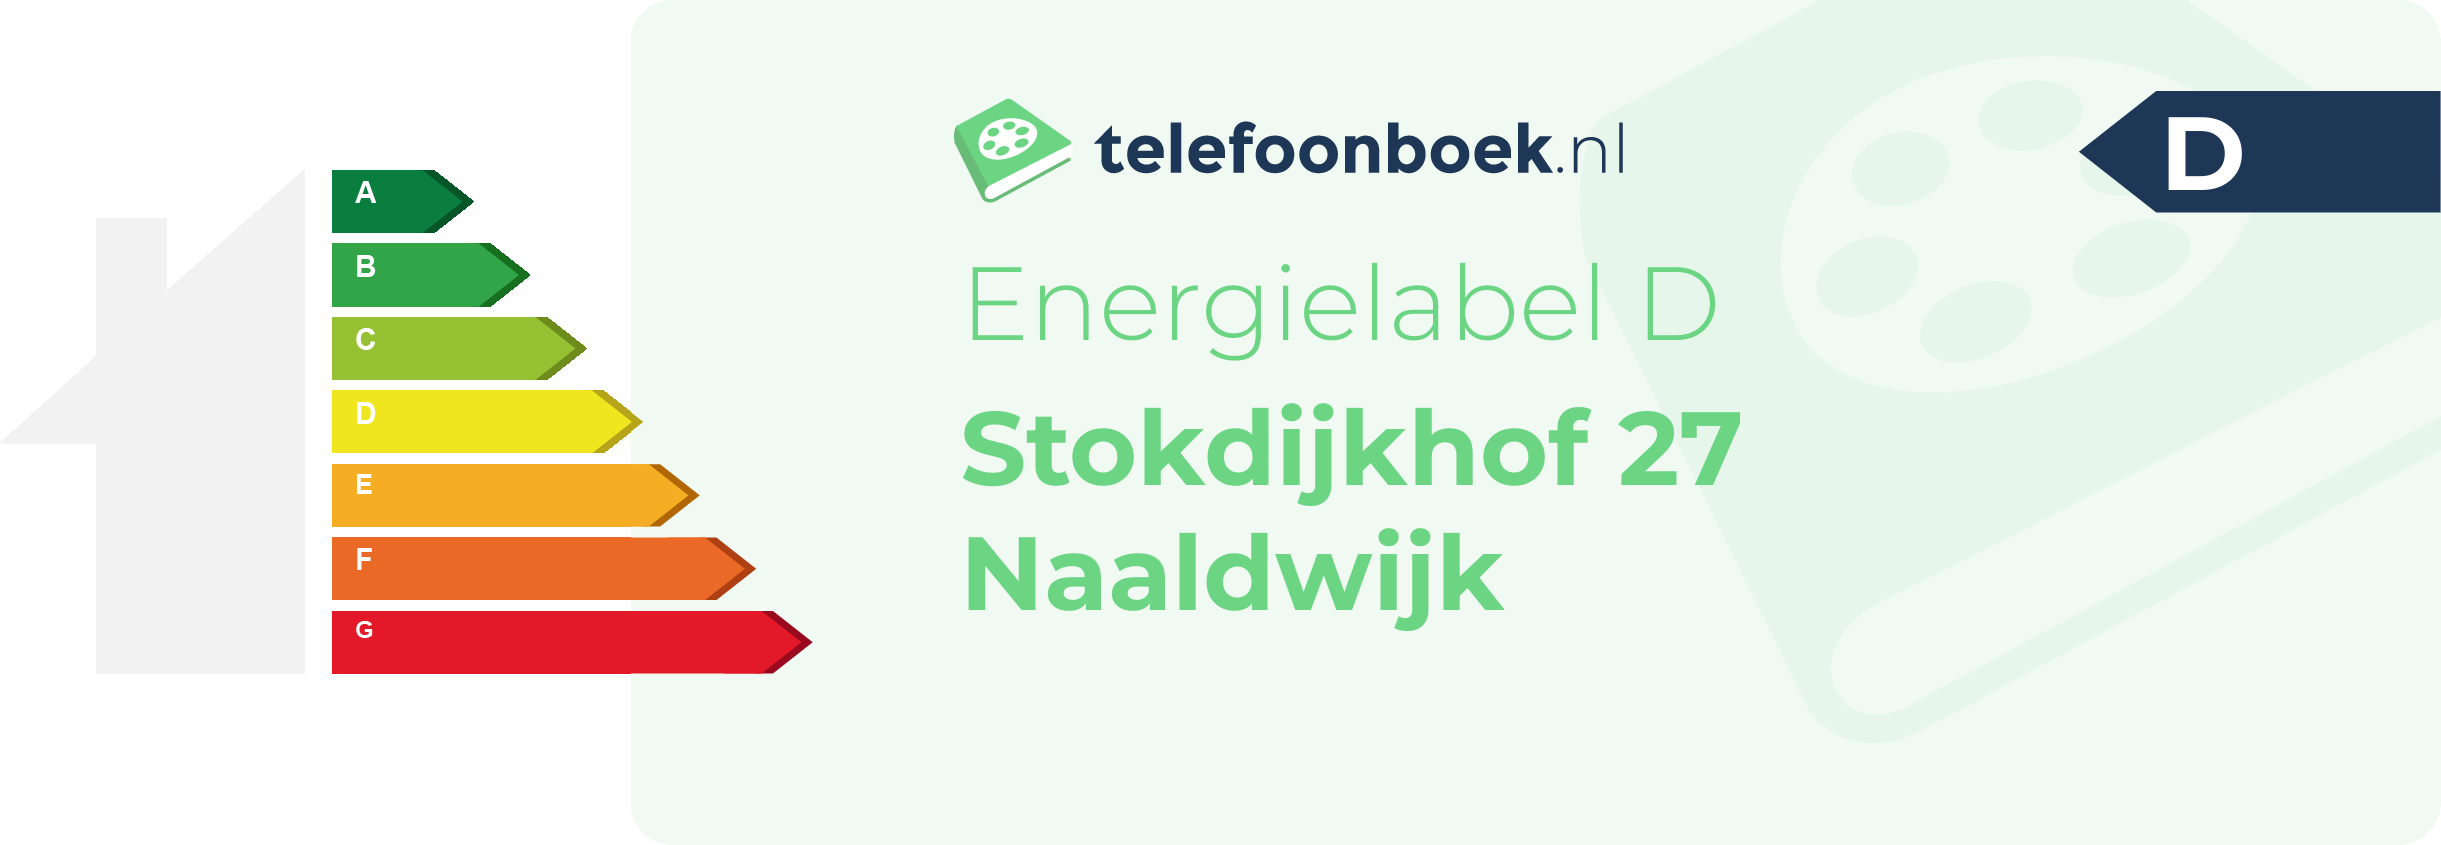 Energielabel Stokdijkhof 27 Naaldwijk